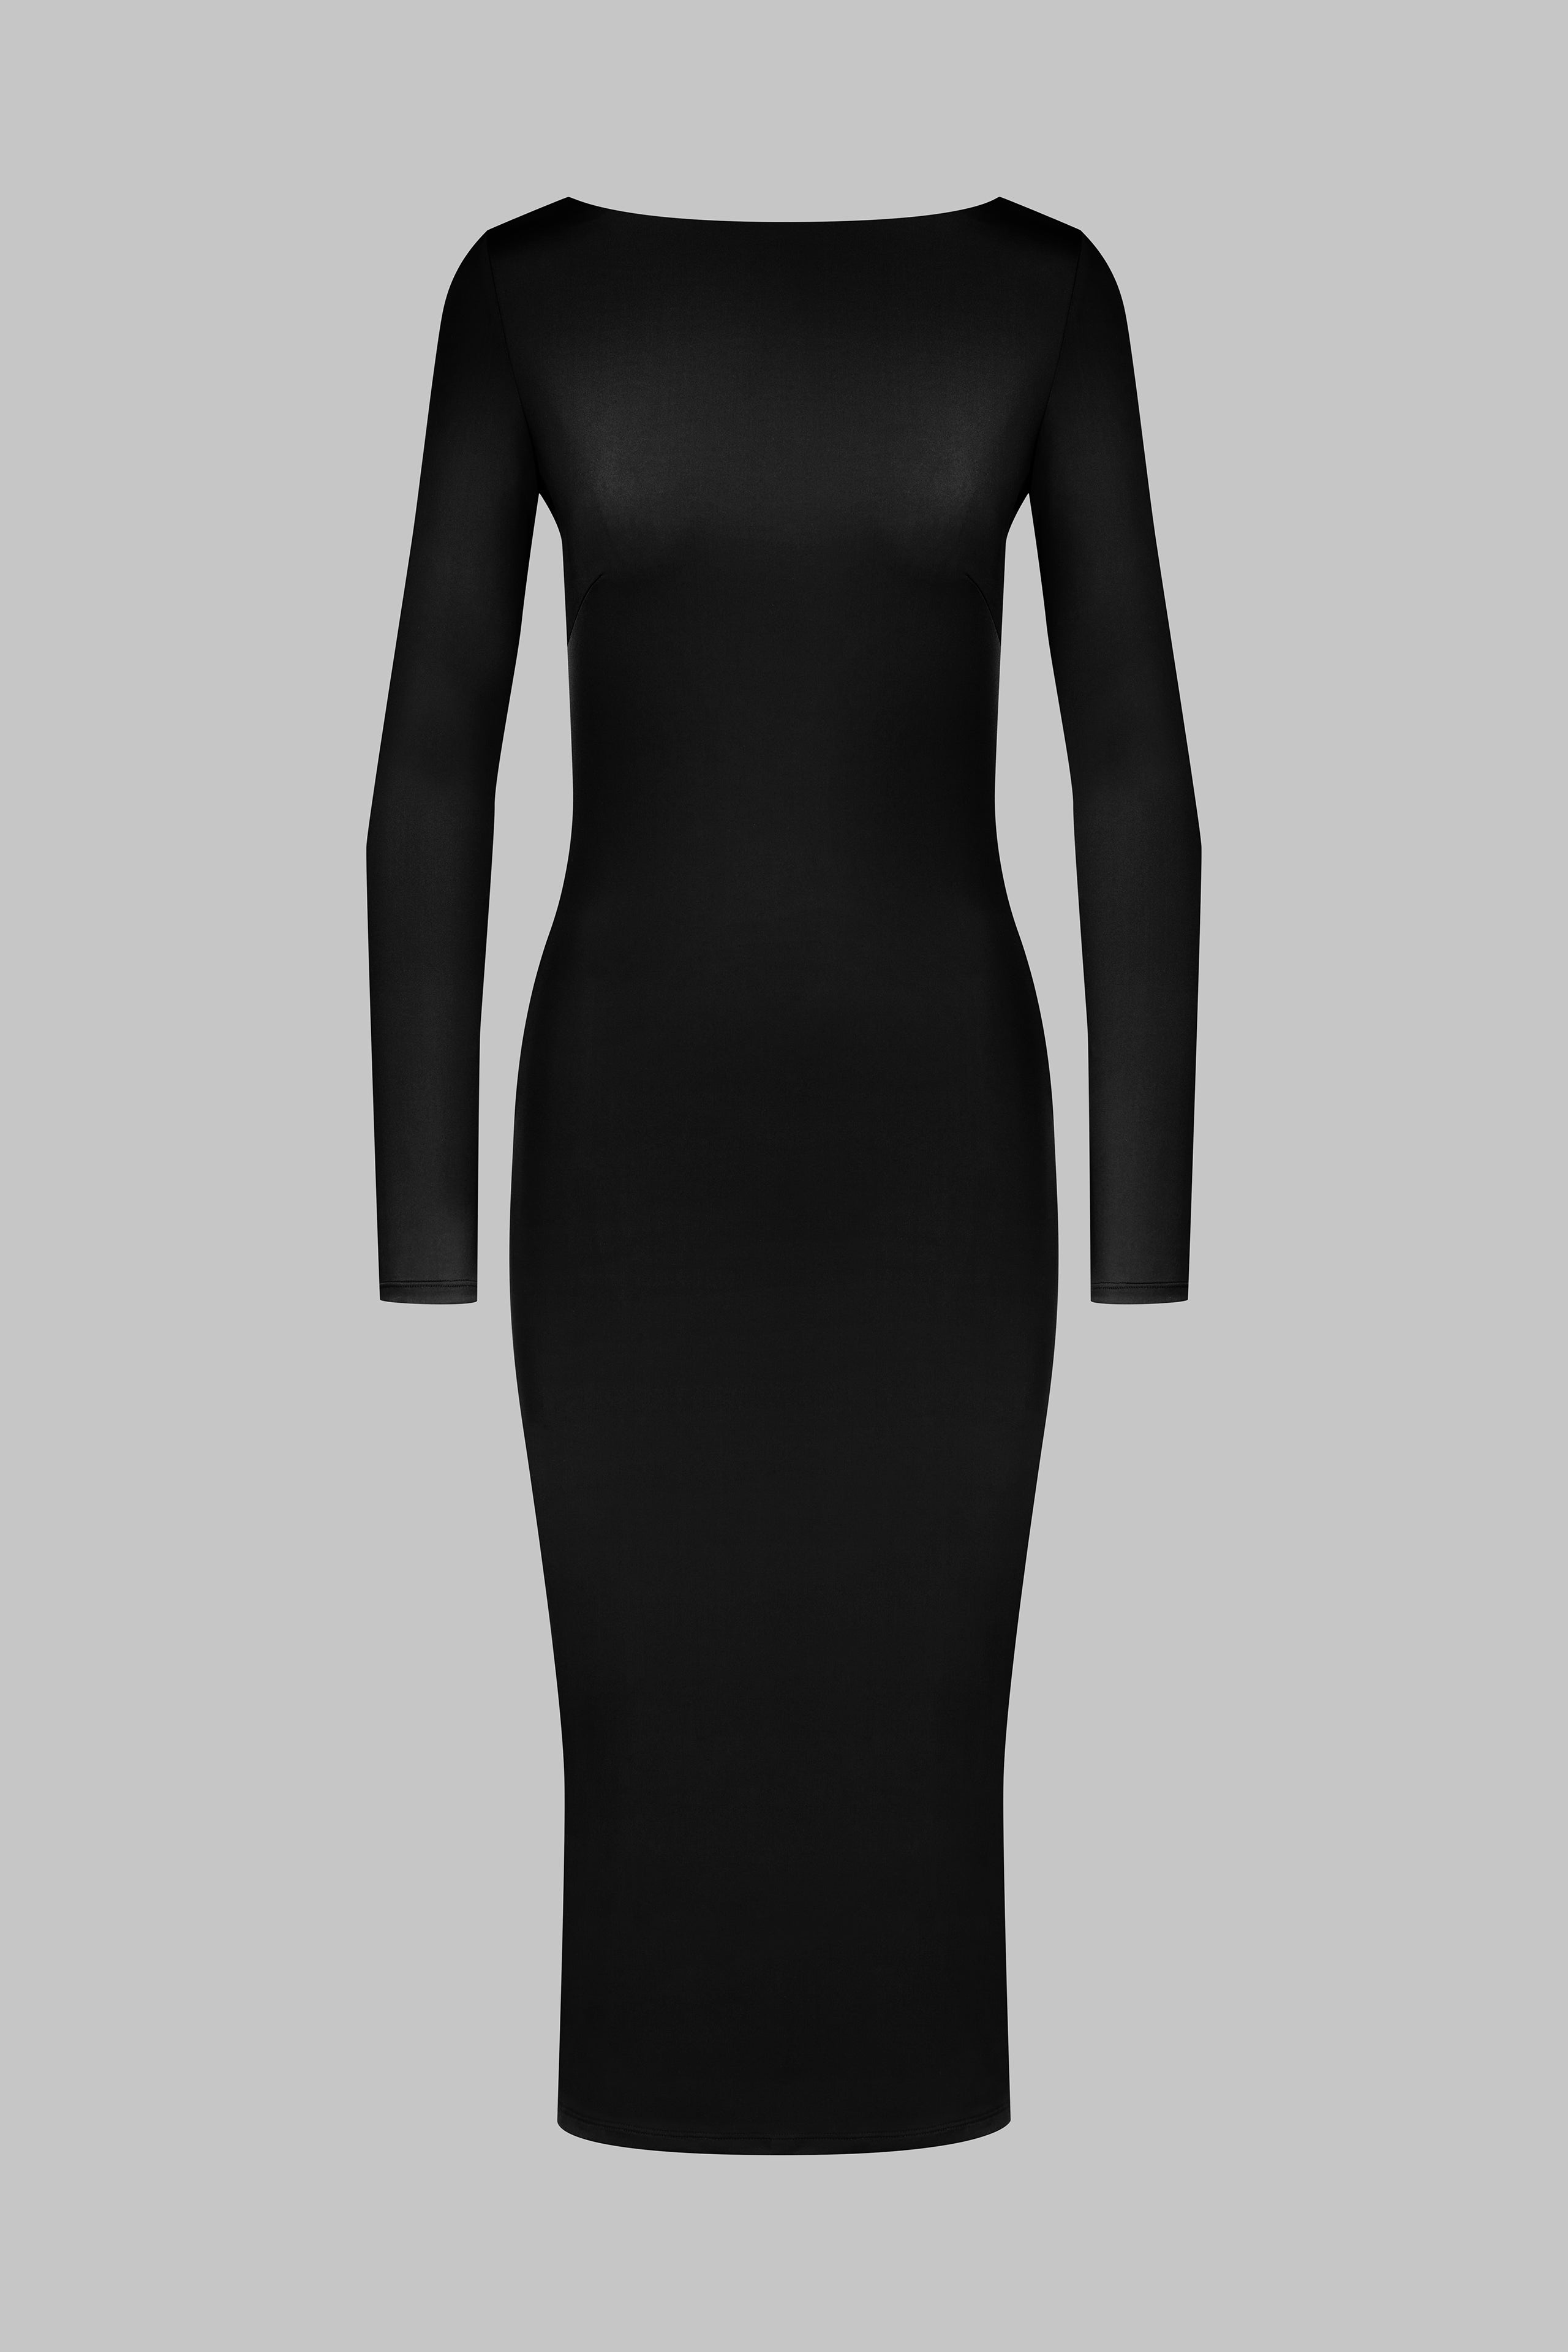 019 - Stretchiges, rückenfreies Midi-Kleid mit langen Ärmeln